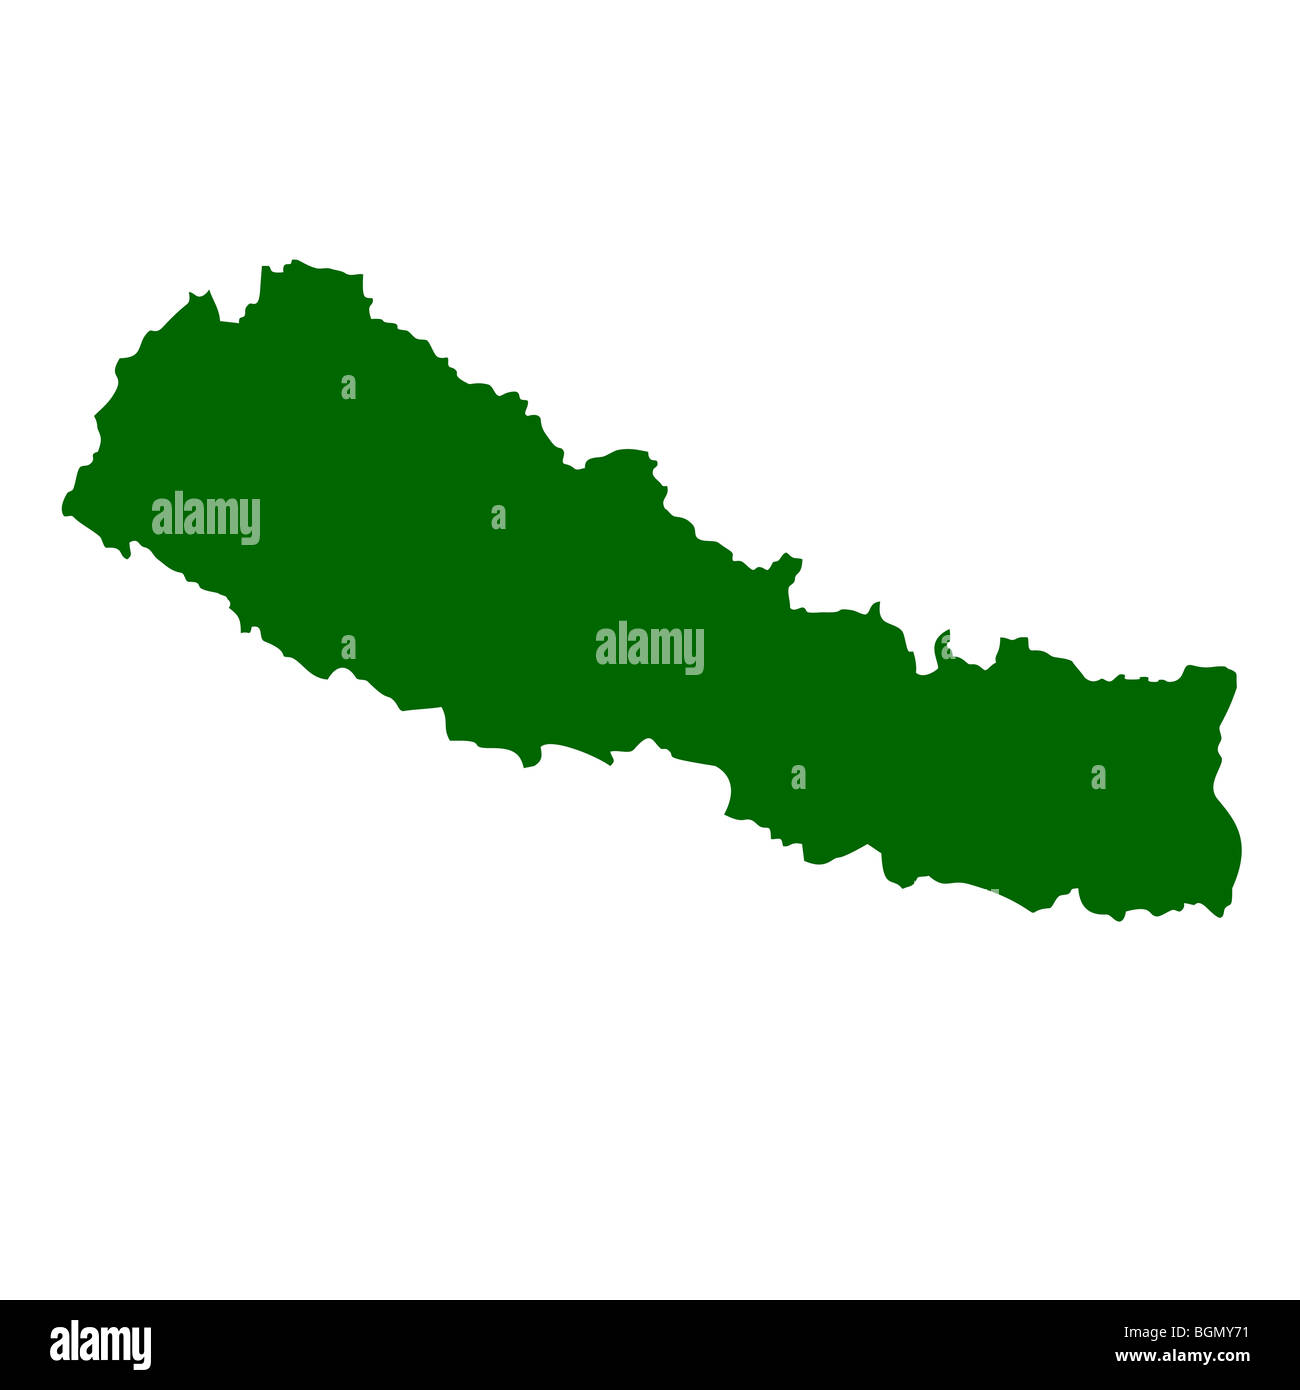 Nepal map isolated on white background. Stock Photo